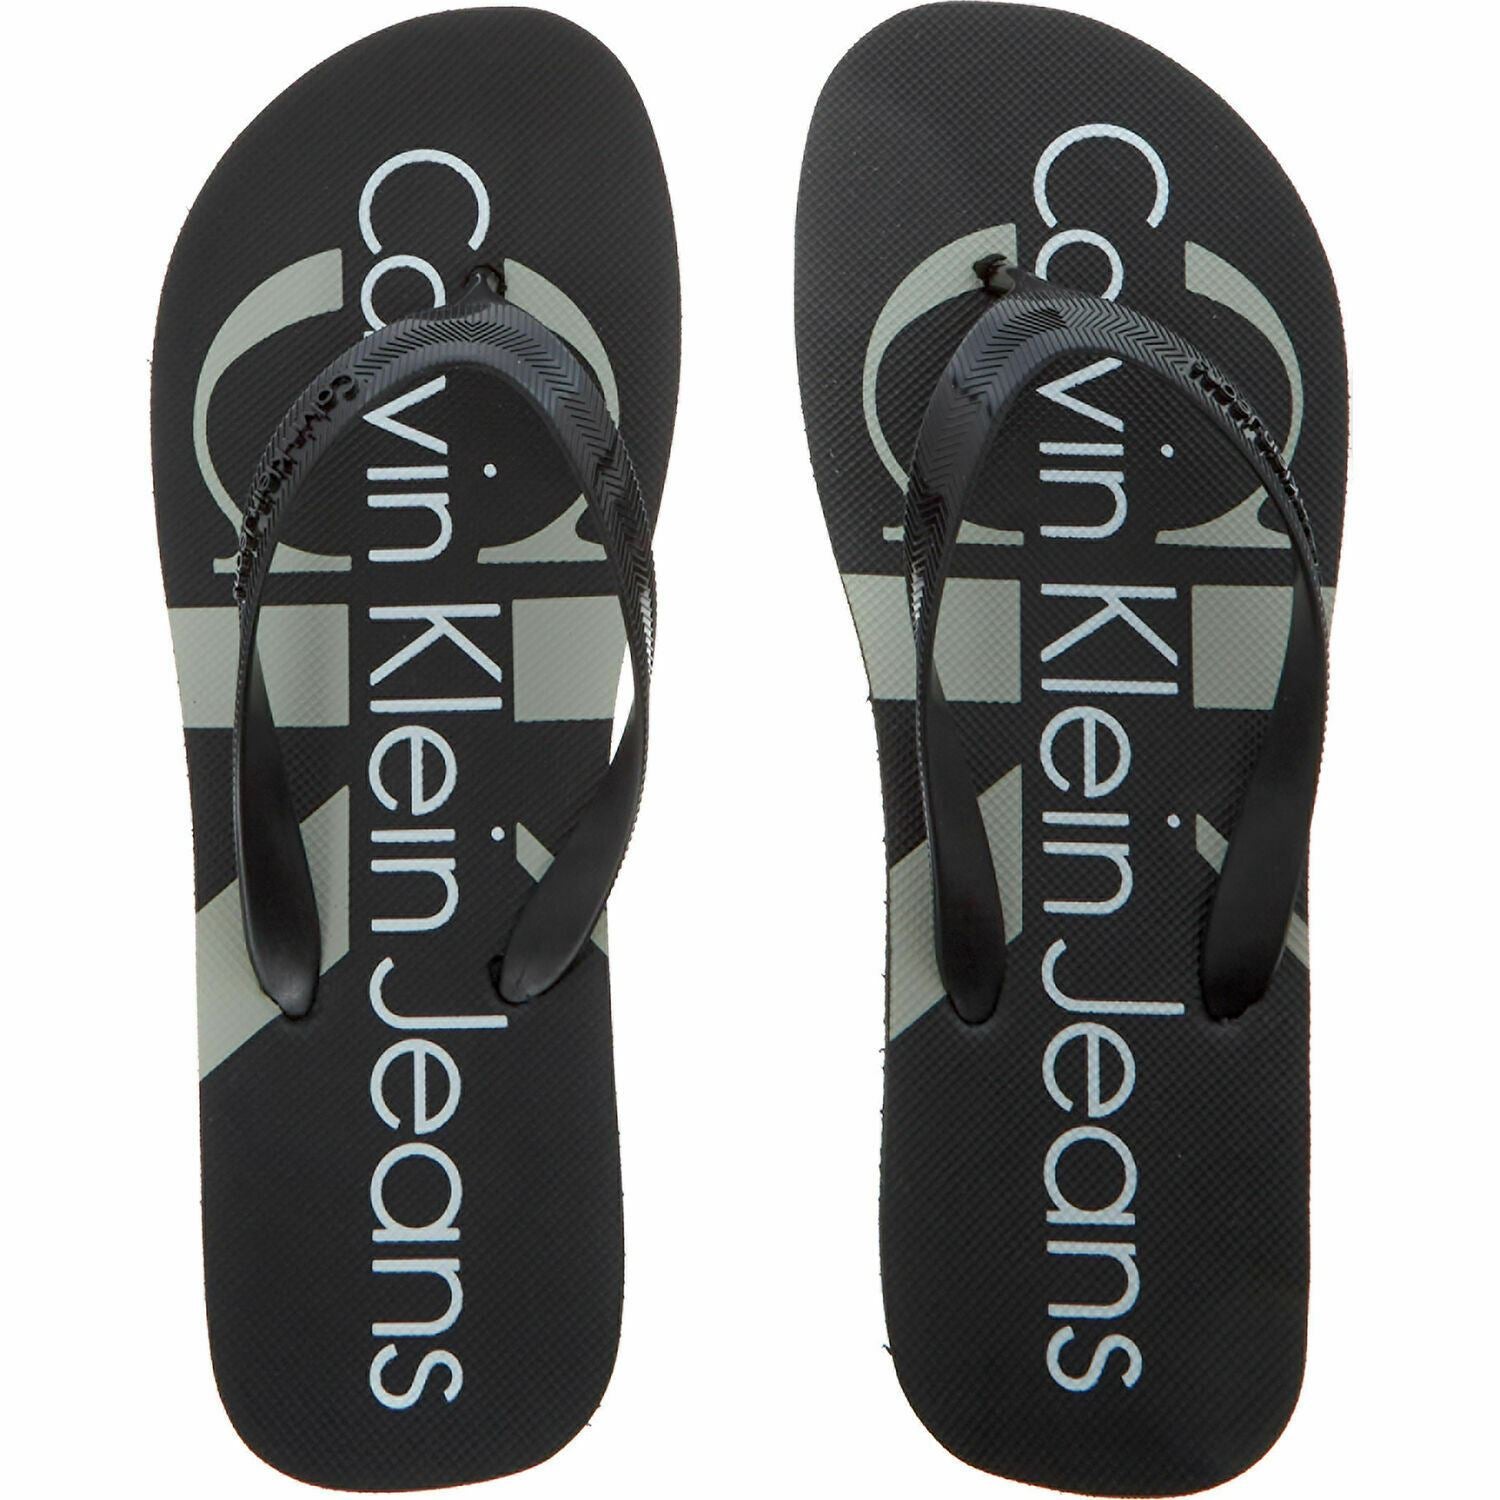 CALVIN KLEIN Men's DASH JELLY Black Flip Flops Beach Sandals, size UK 10 / EU 44